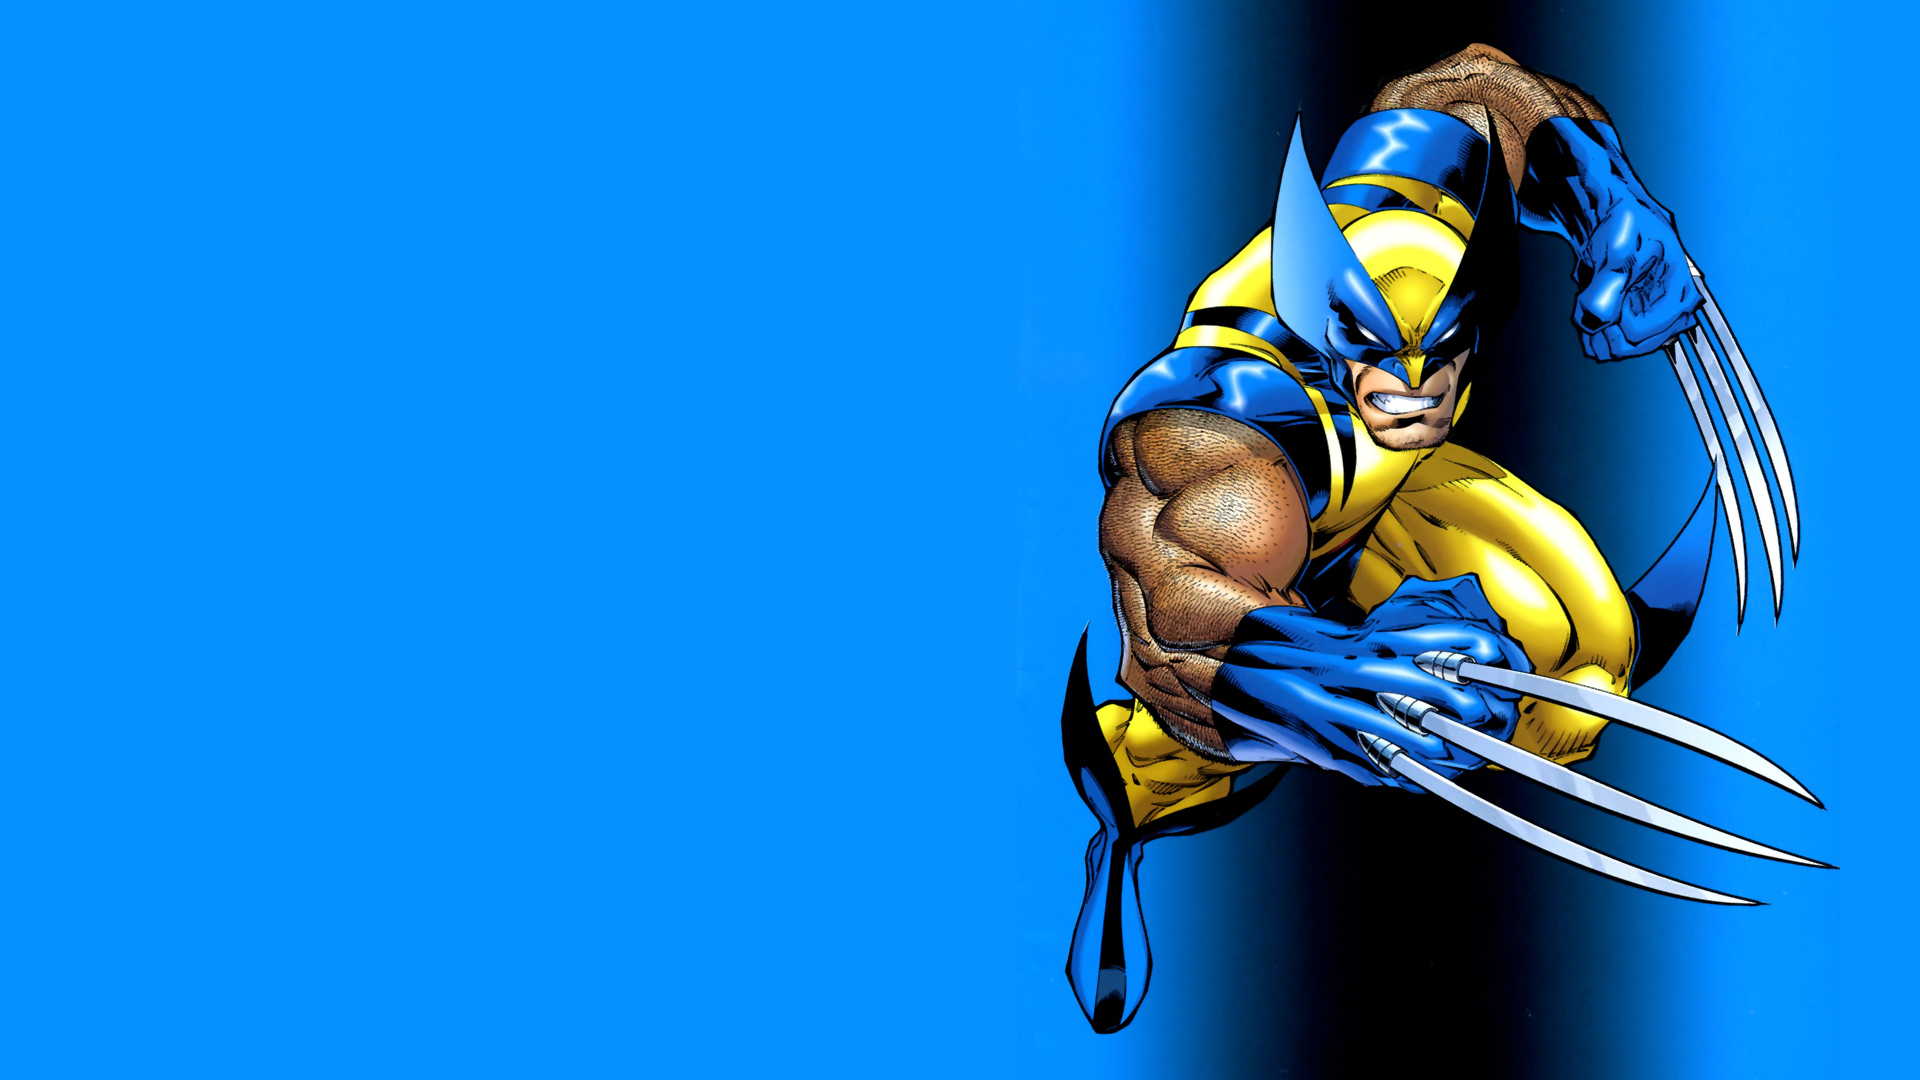 2013 Wolverine: Origin